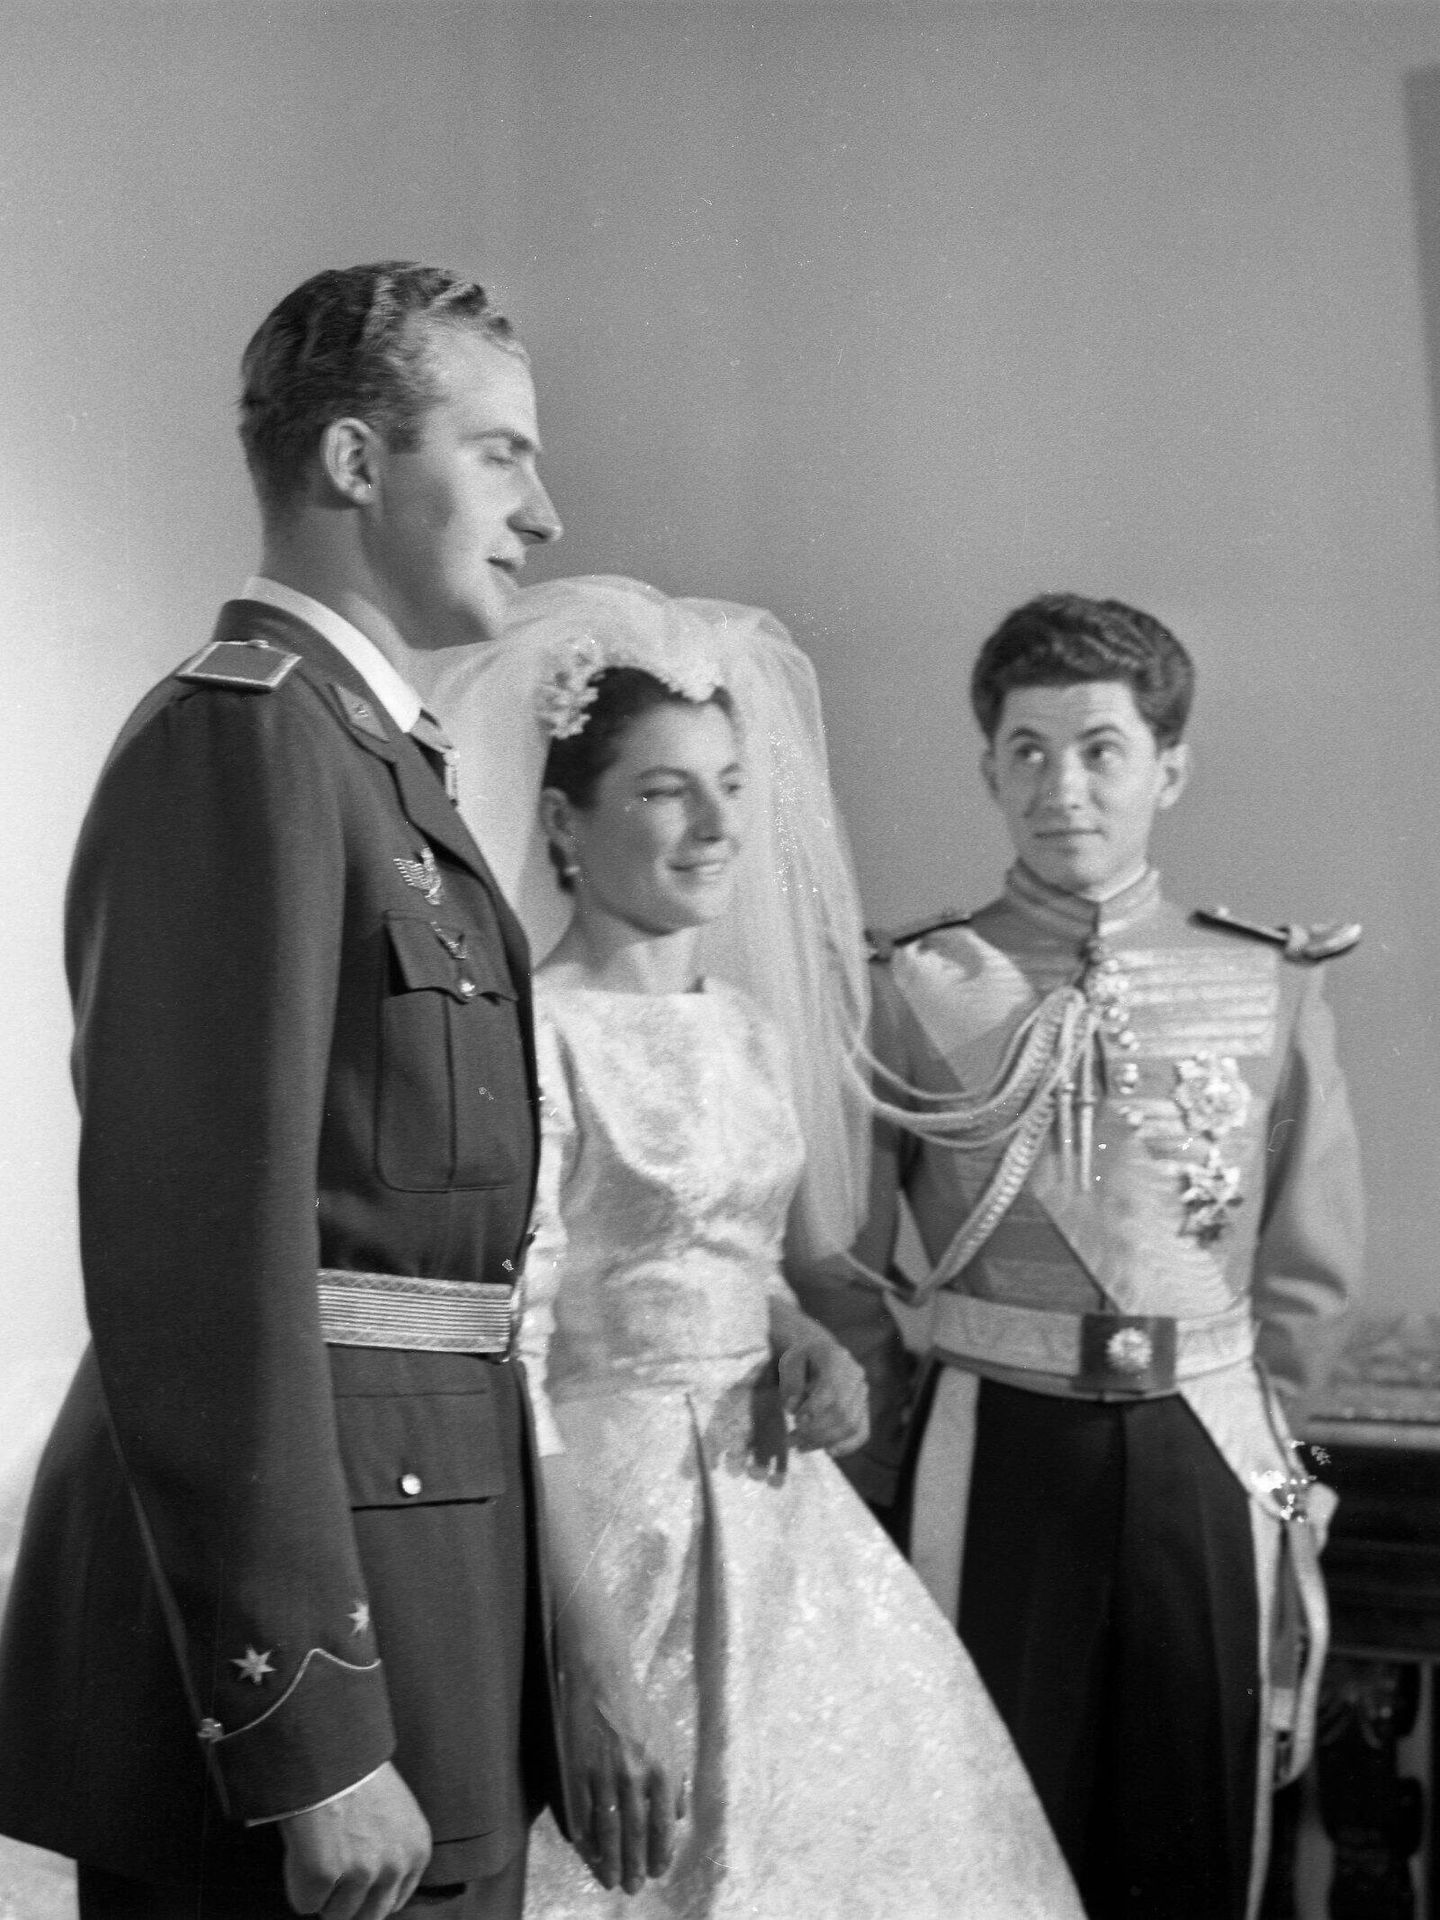 La boda entre Teresa de Borbón Dos Sicilias y Borbón-Parma con don Iñigo Moreno y de Arteaga Marques de Laula en abril de 1961. (Europa Press)